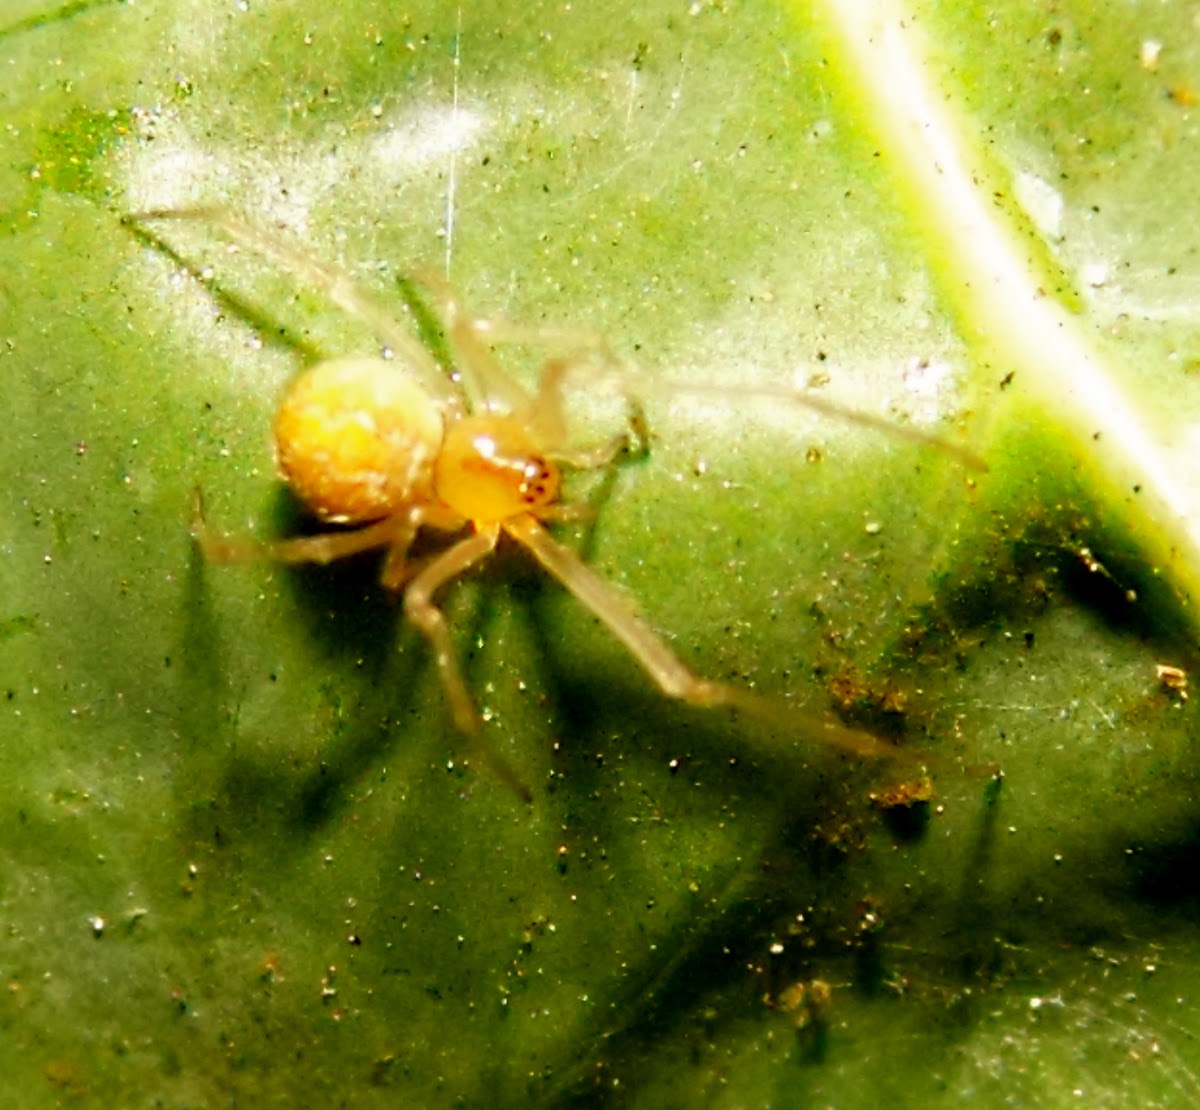 common garden spider